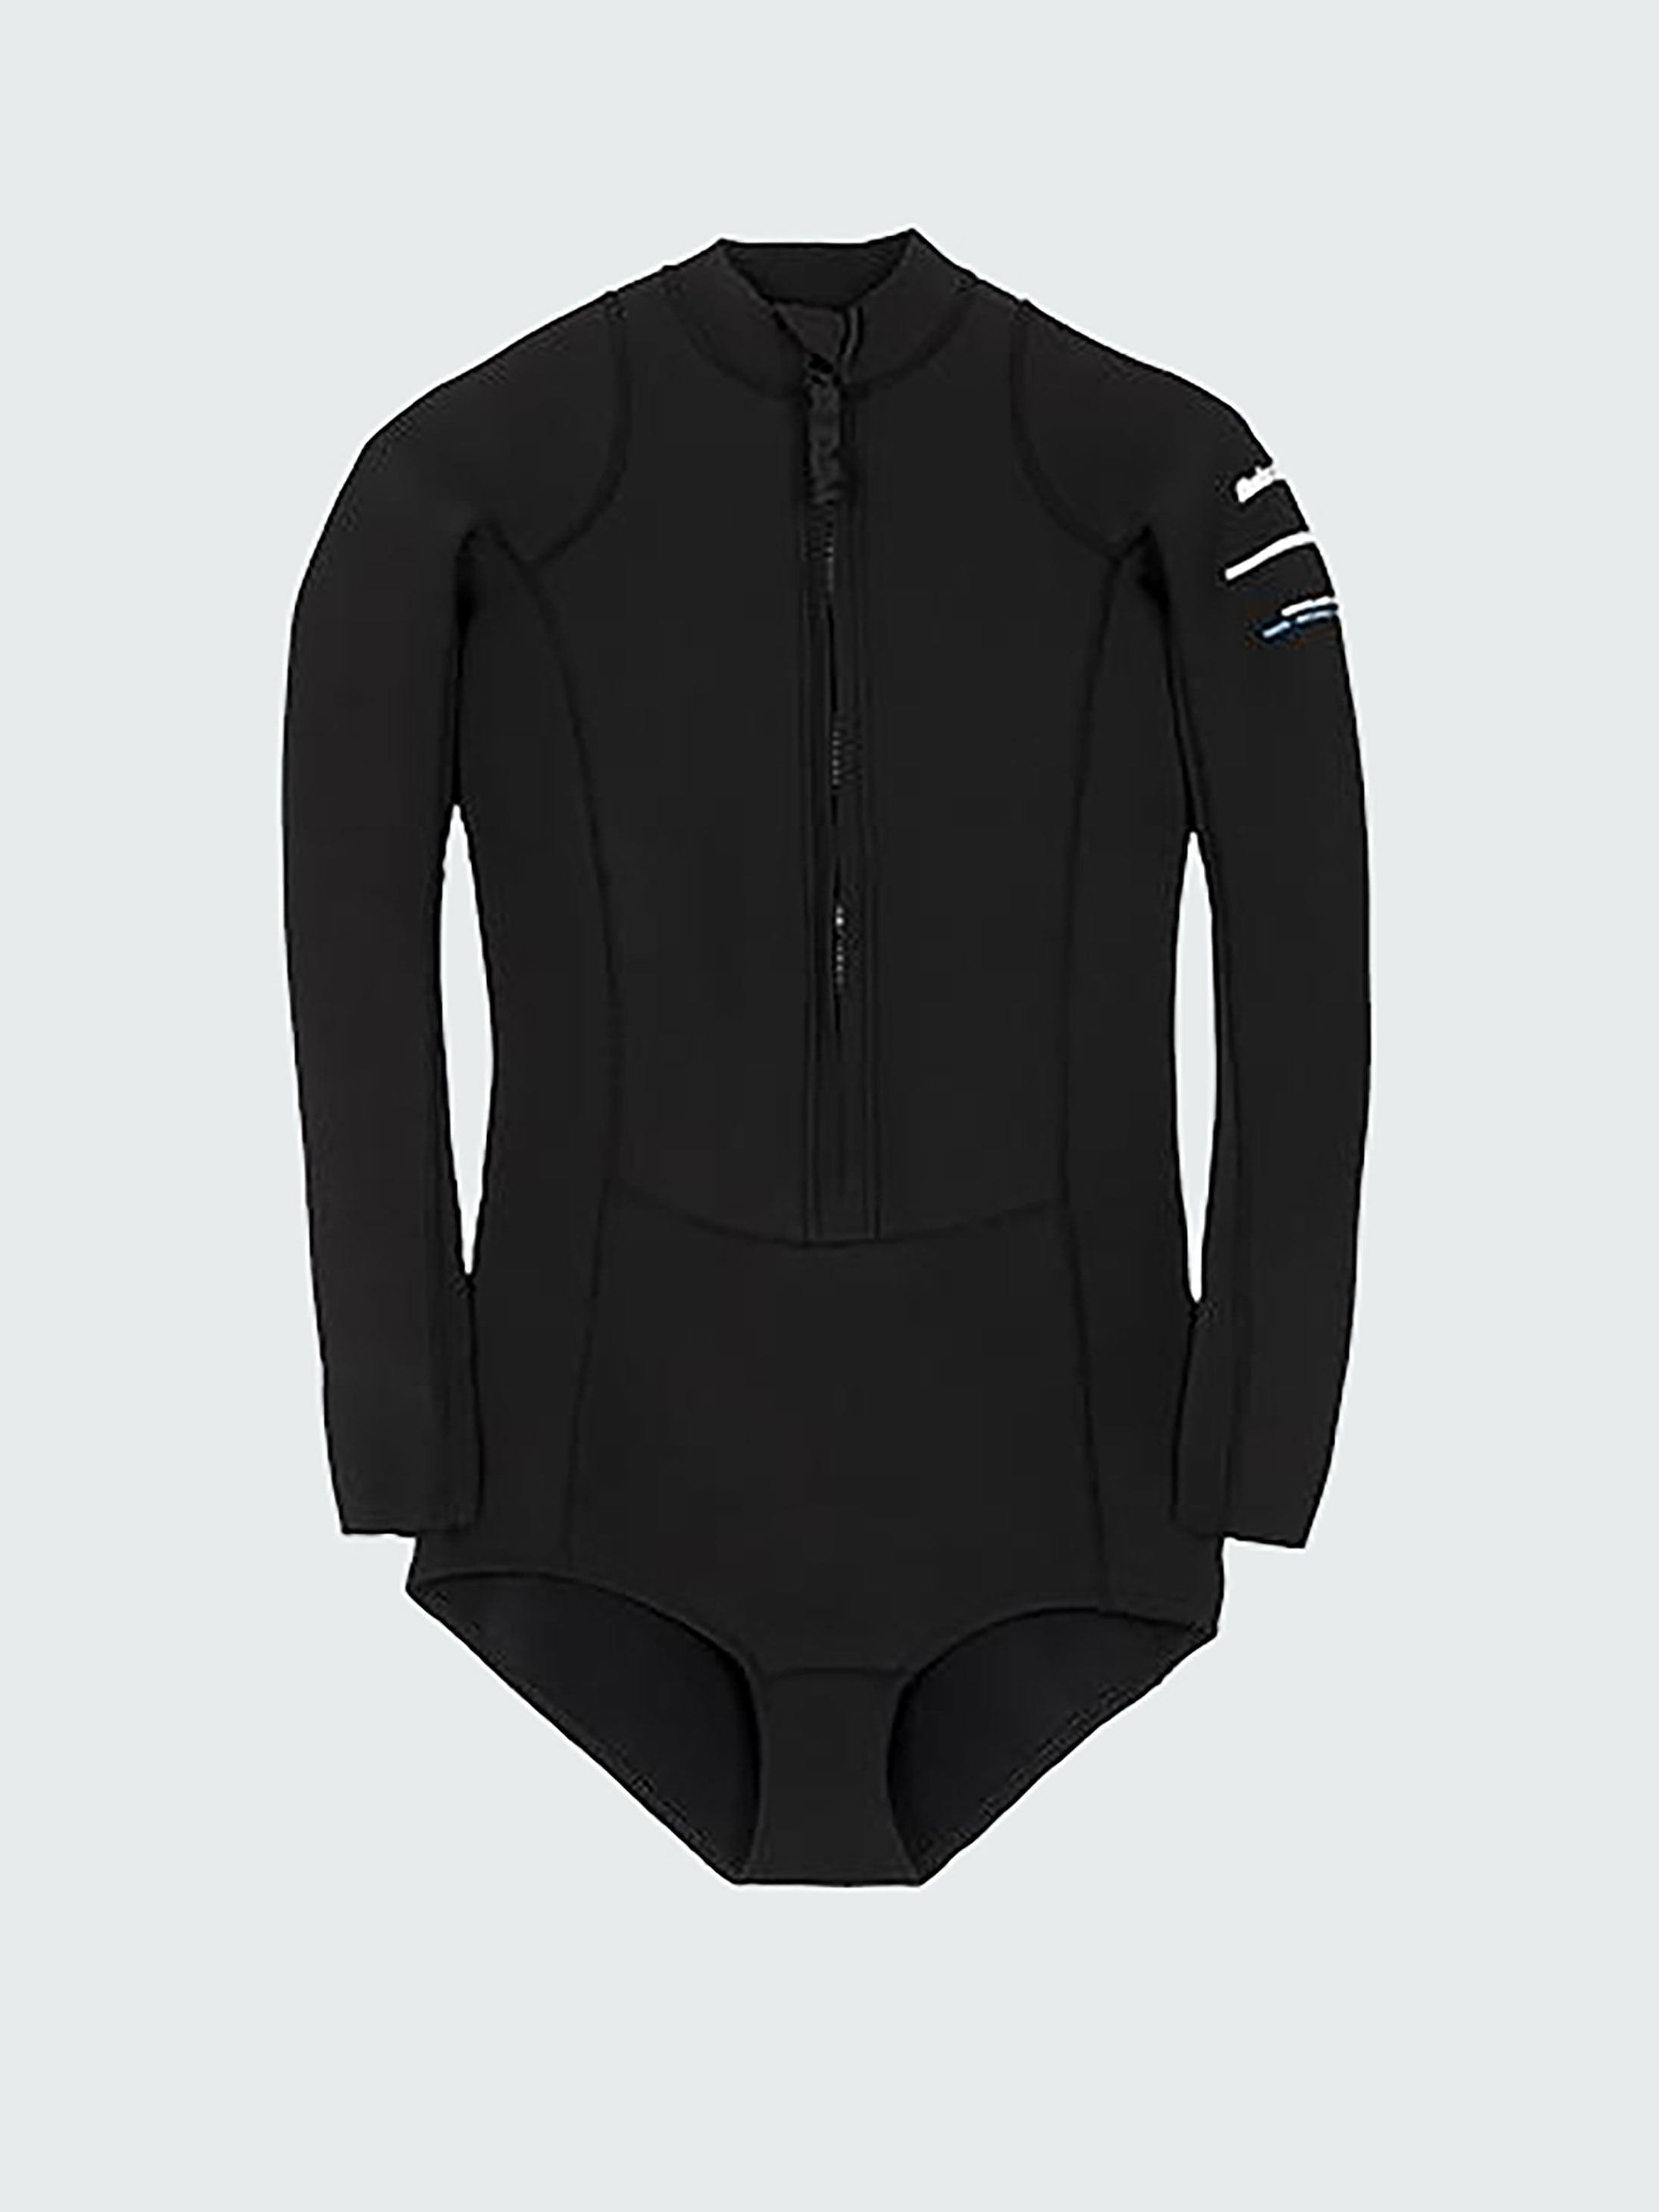 Women's Nieuwland 2e Yulex Long Sleeve Swimsuit in Black